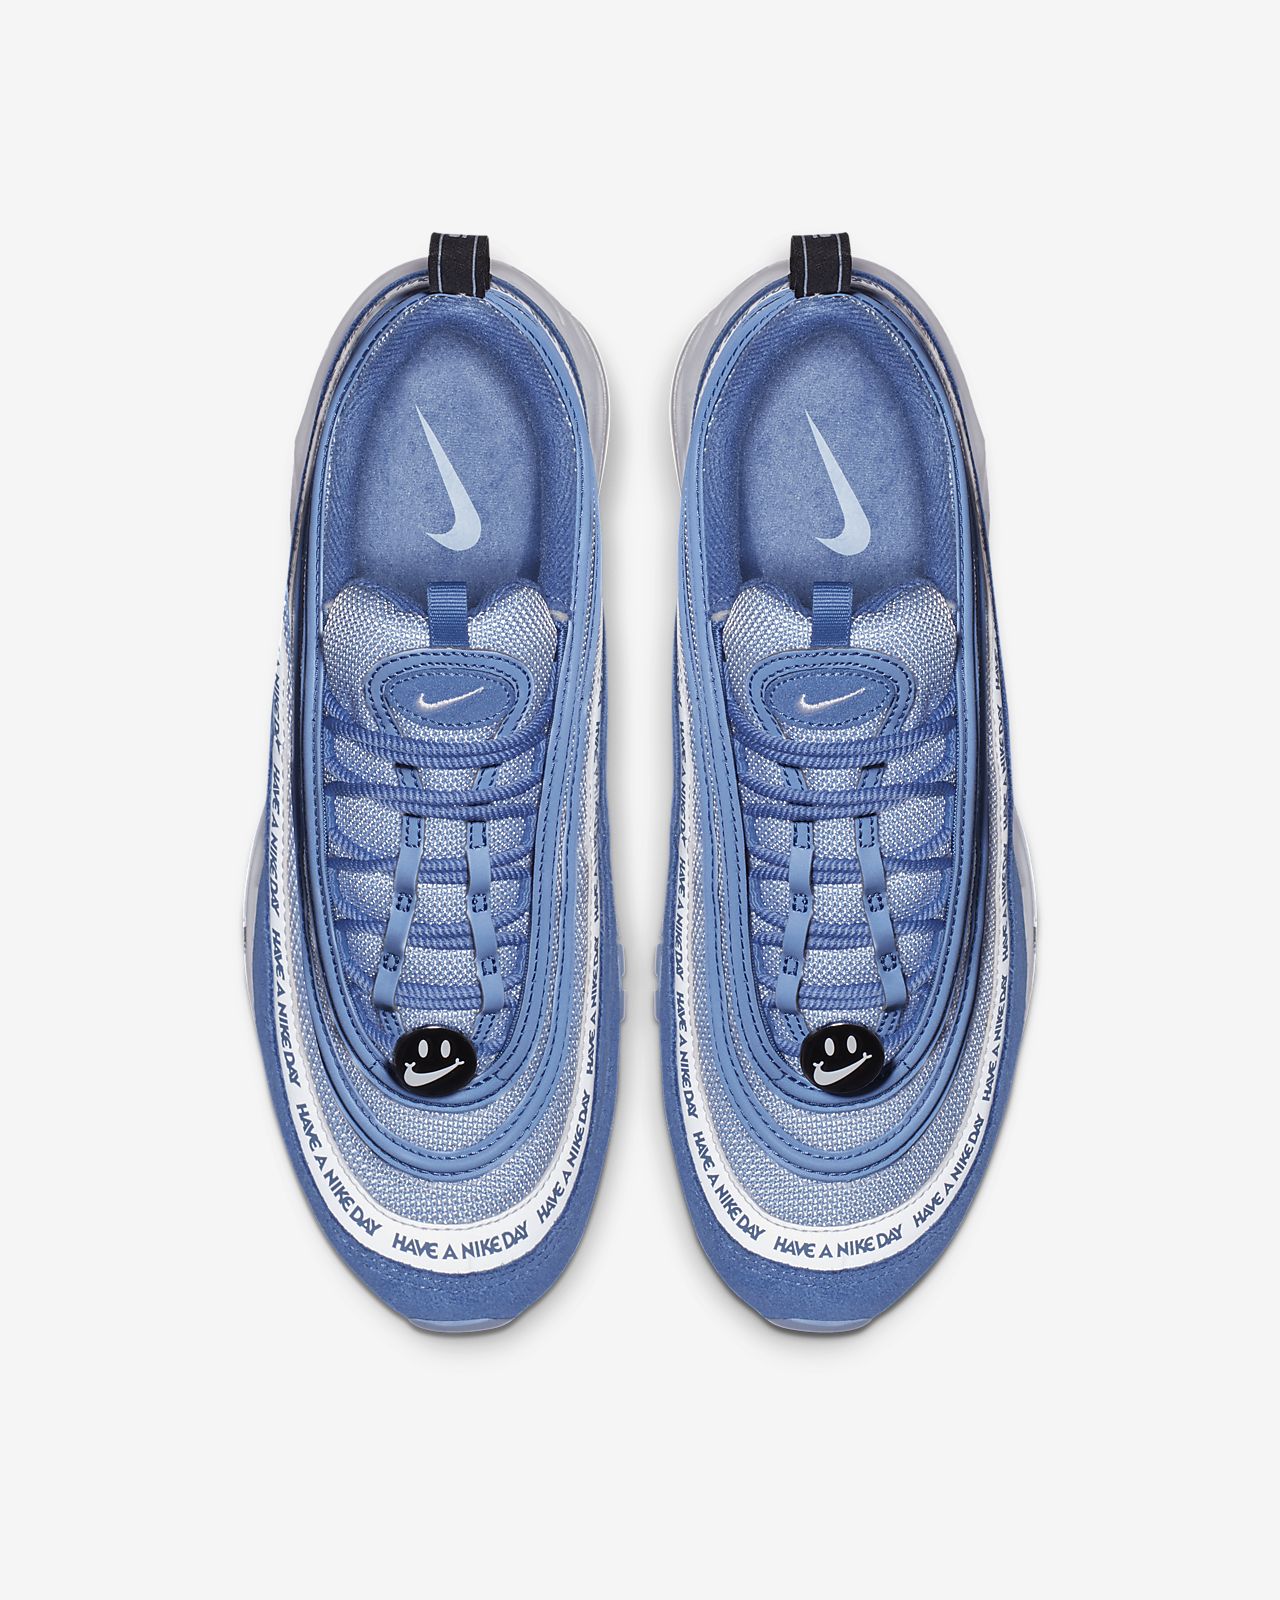 Nike Air Max 97 Blauwe Maat 40 Schoenen kopen